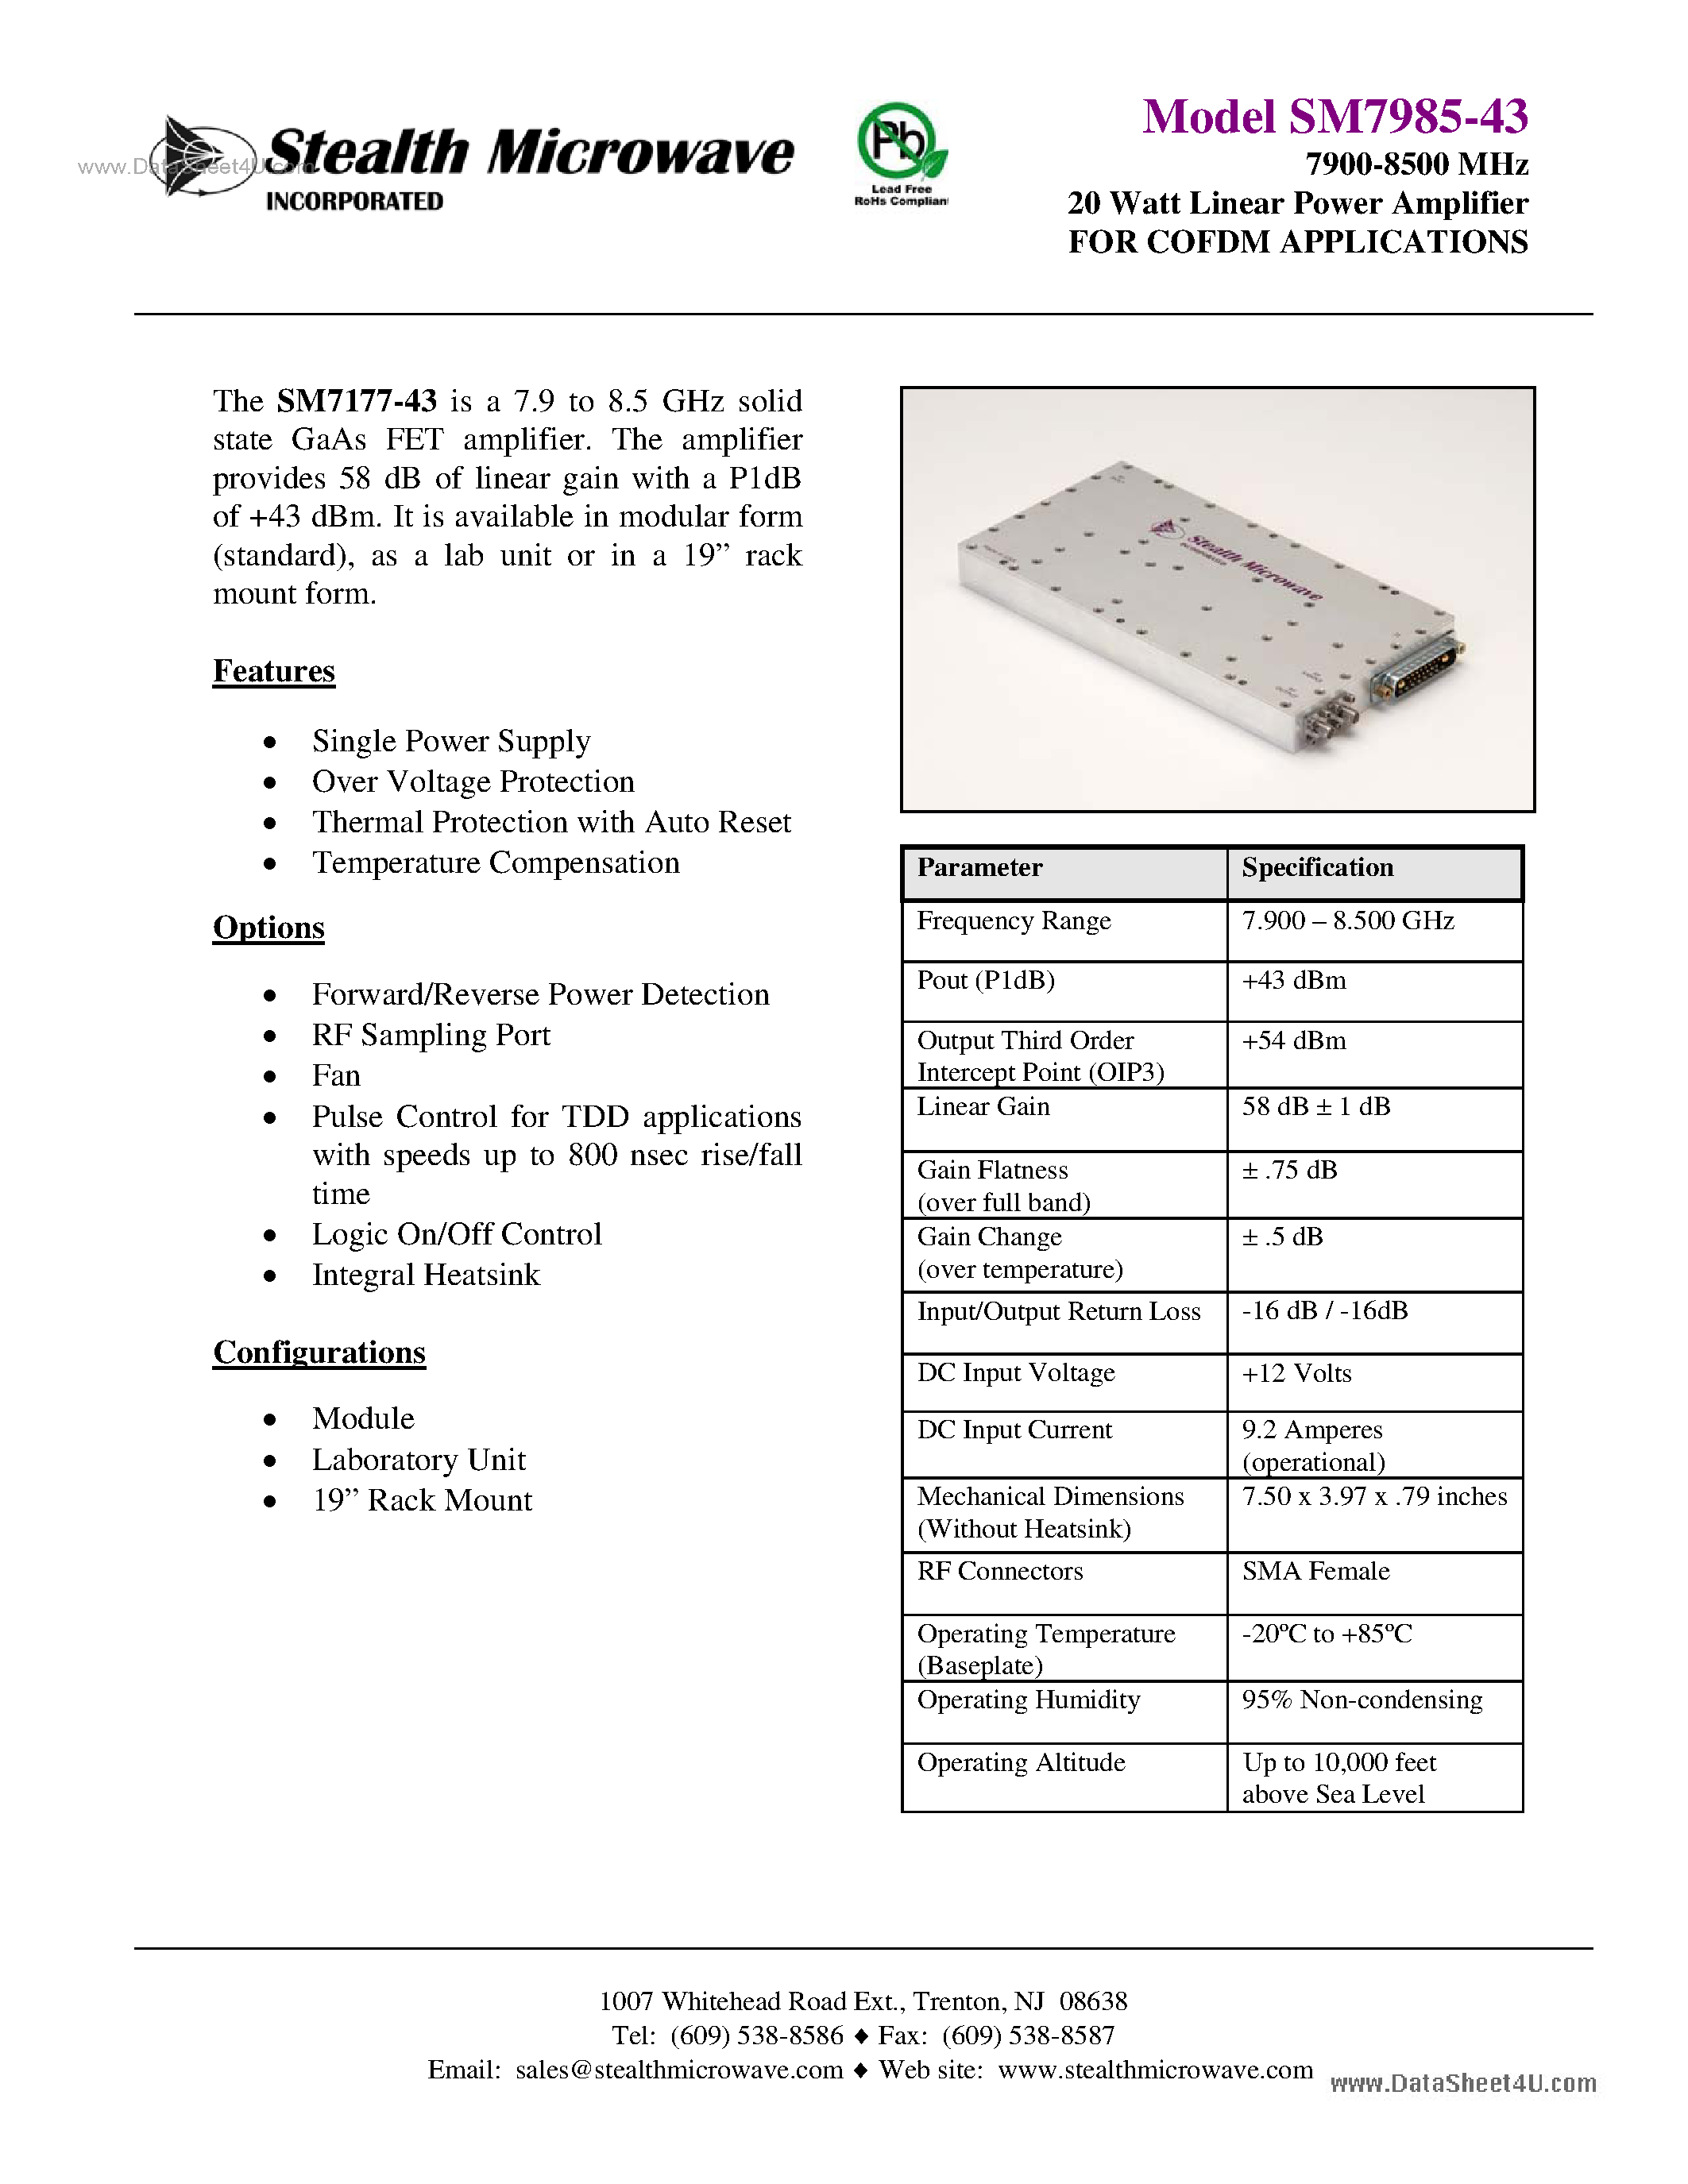 Datasheet SM7985-43 - 7900-8500 MHz 20 Watt Linear Power Amplifier page 1